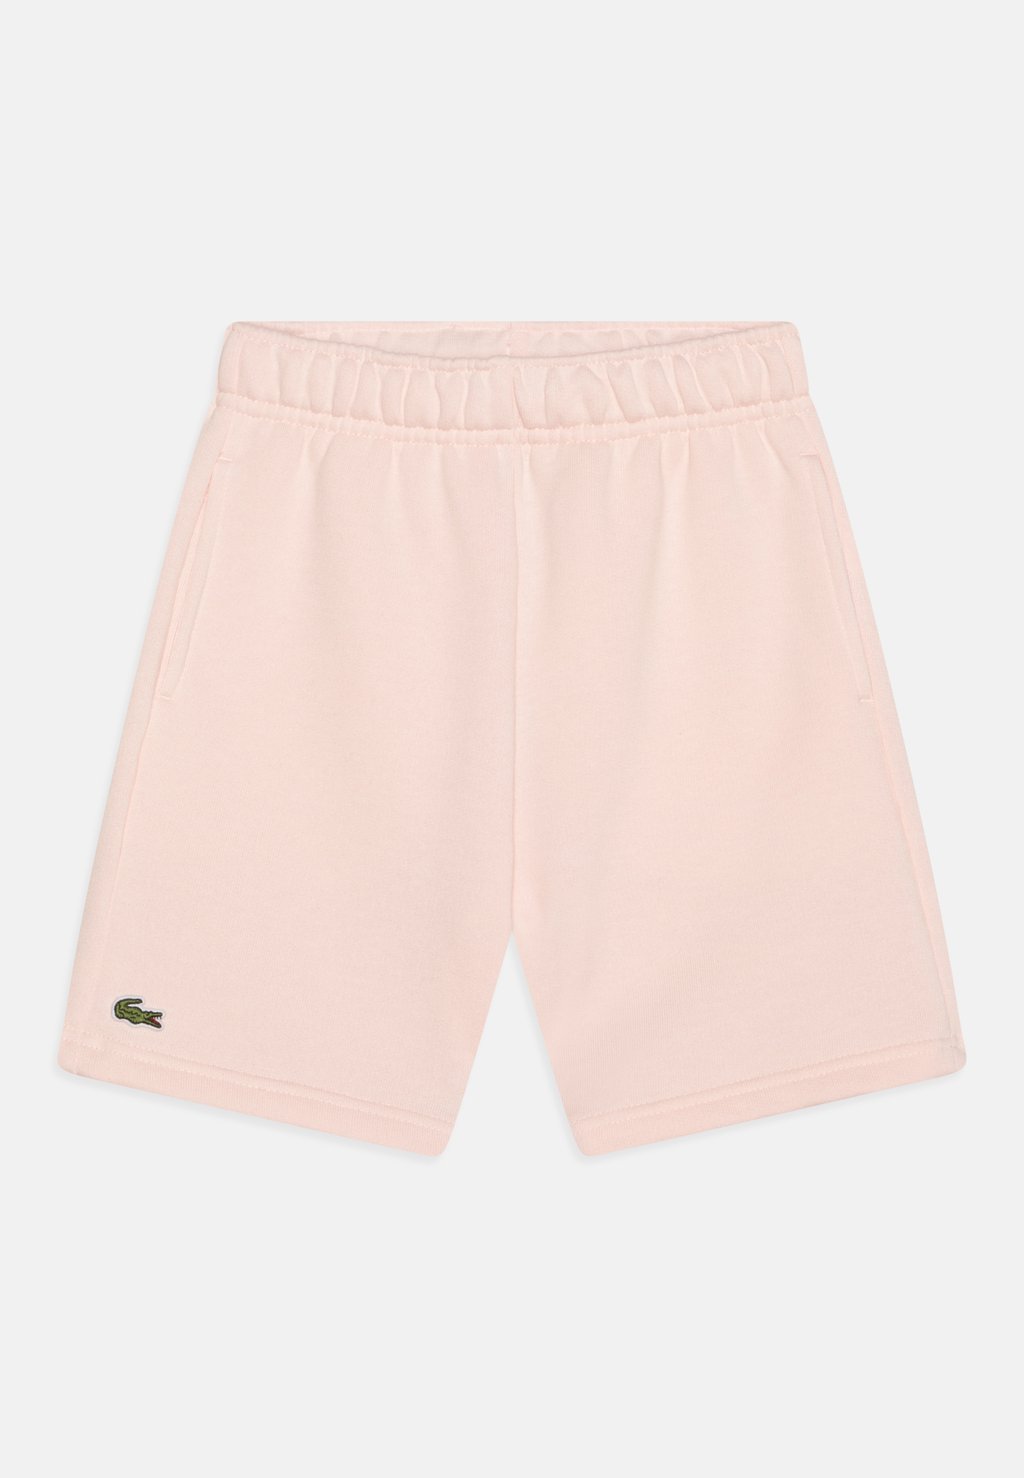 Спортивные шорты Sports Shorts Lacoste, цвет flamingo спортивные шорты sports shorts lacoste цвет navy blue